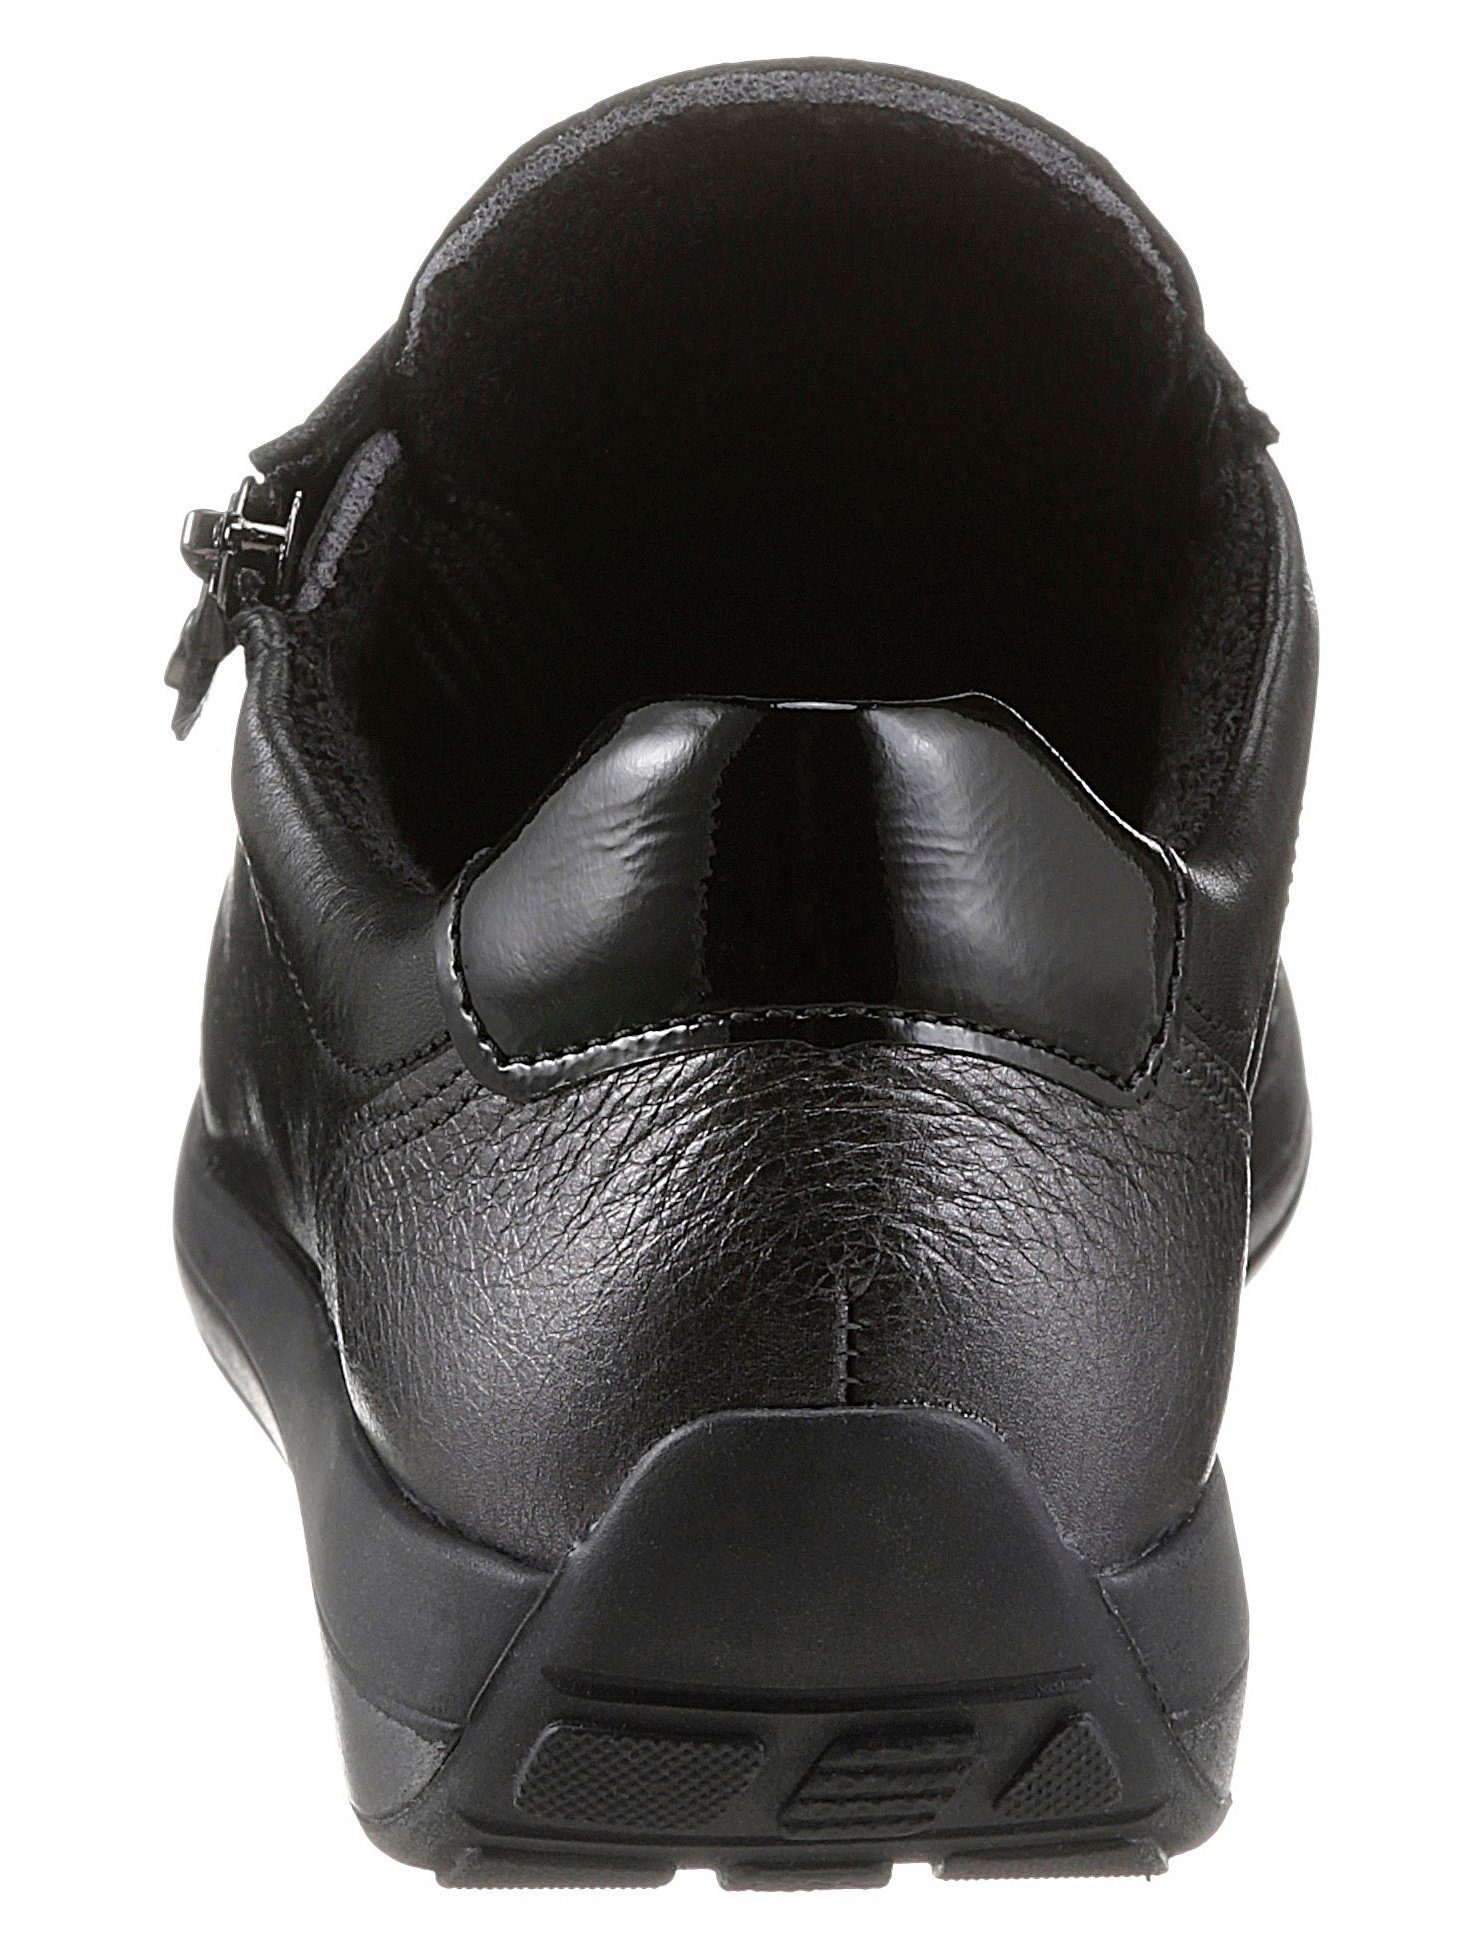 OSAKA 046934 Sneaker mit G-Weite schwarz weicher Ara Schaftrandpolsterung,